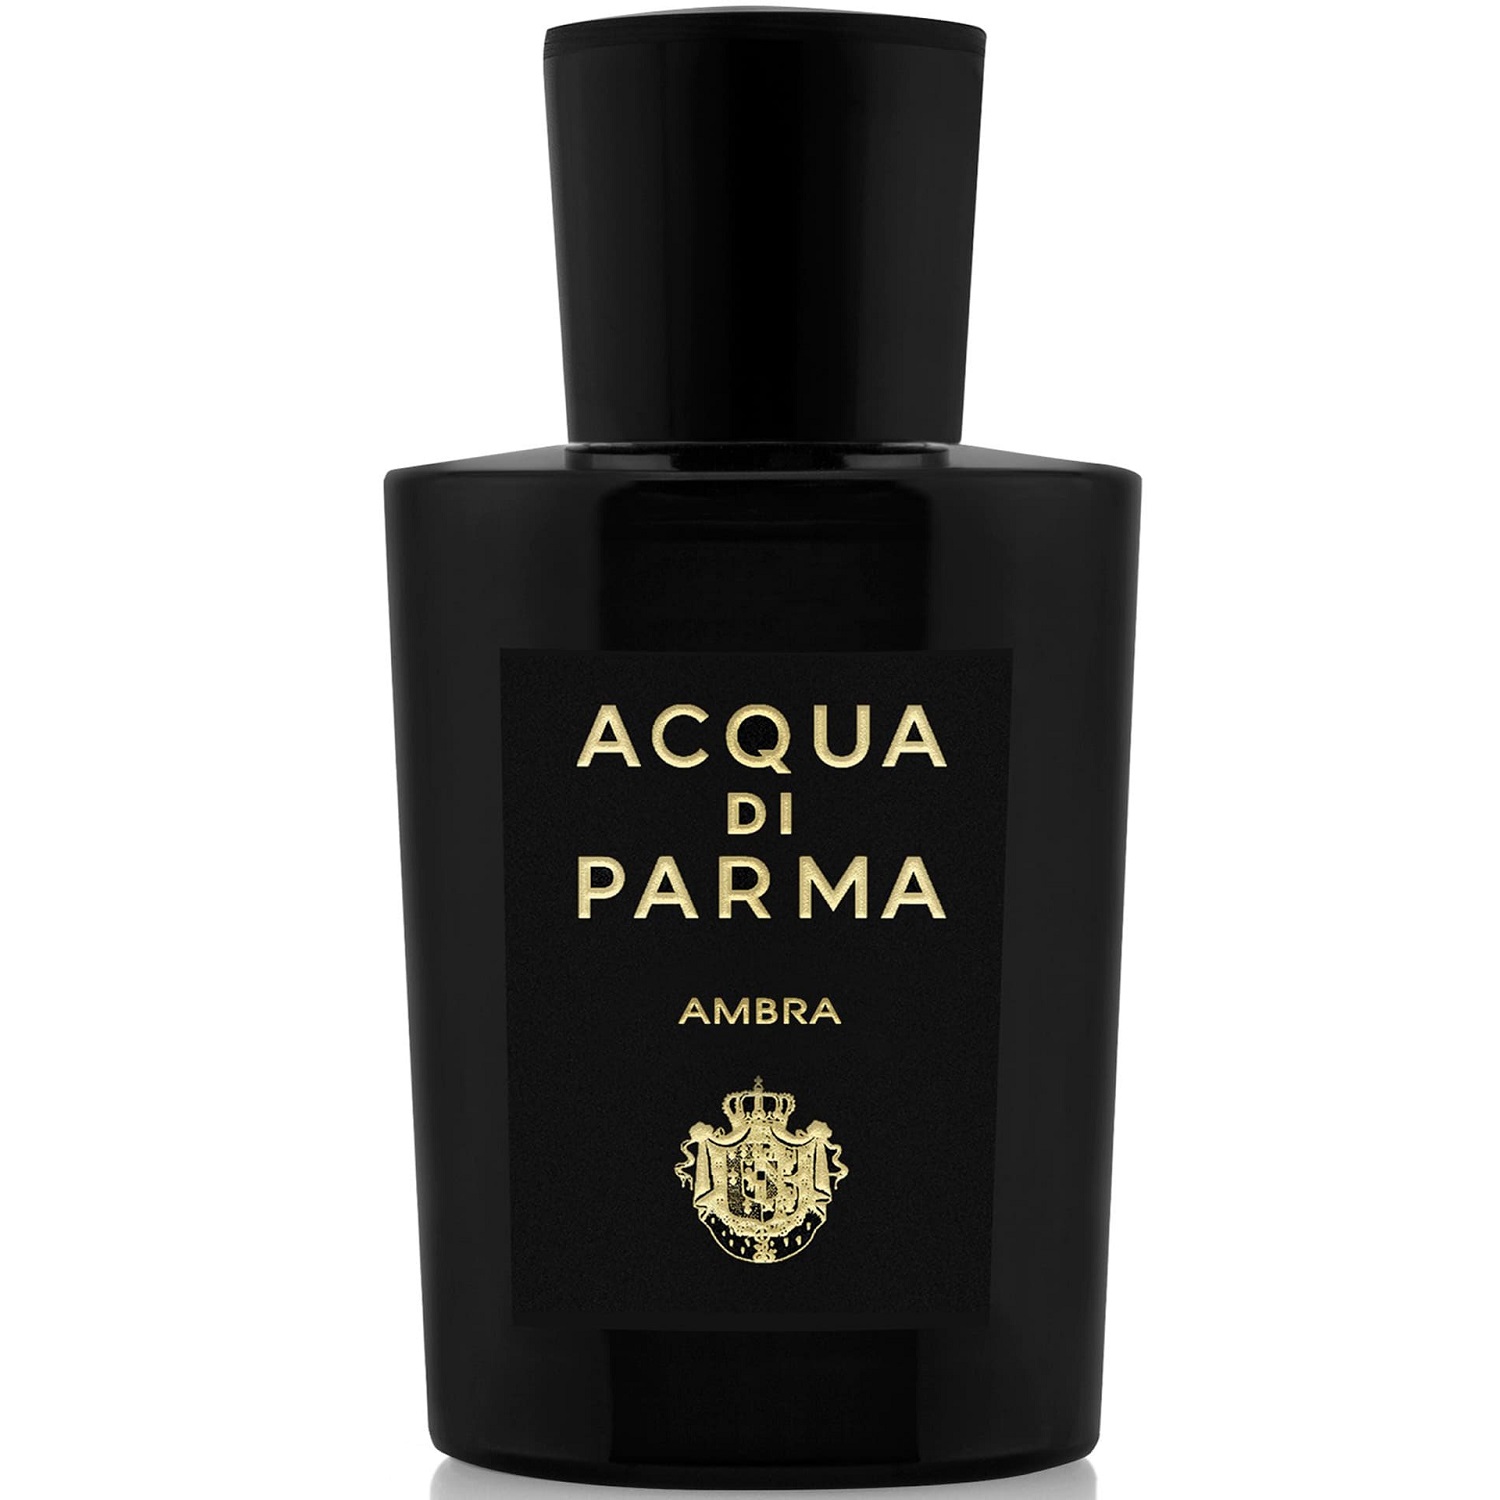 Acqua di Parma - Ambra Eau de Parfum (5мл)